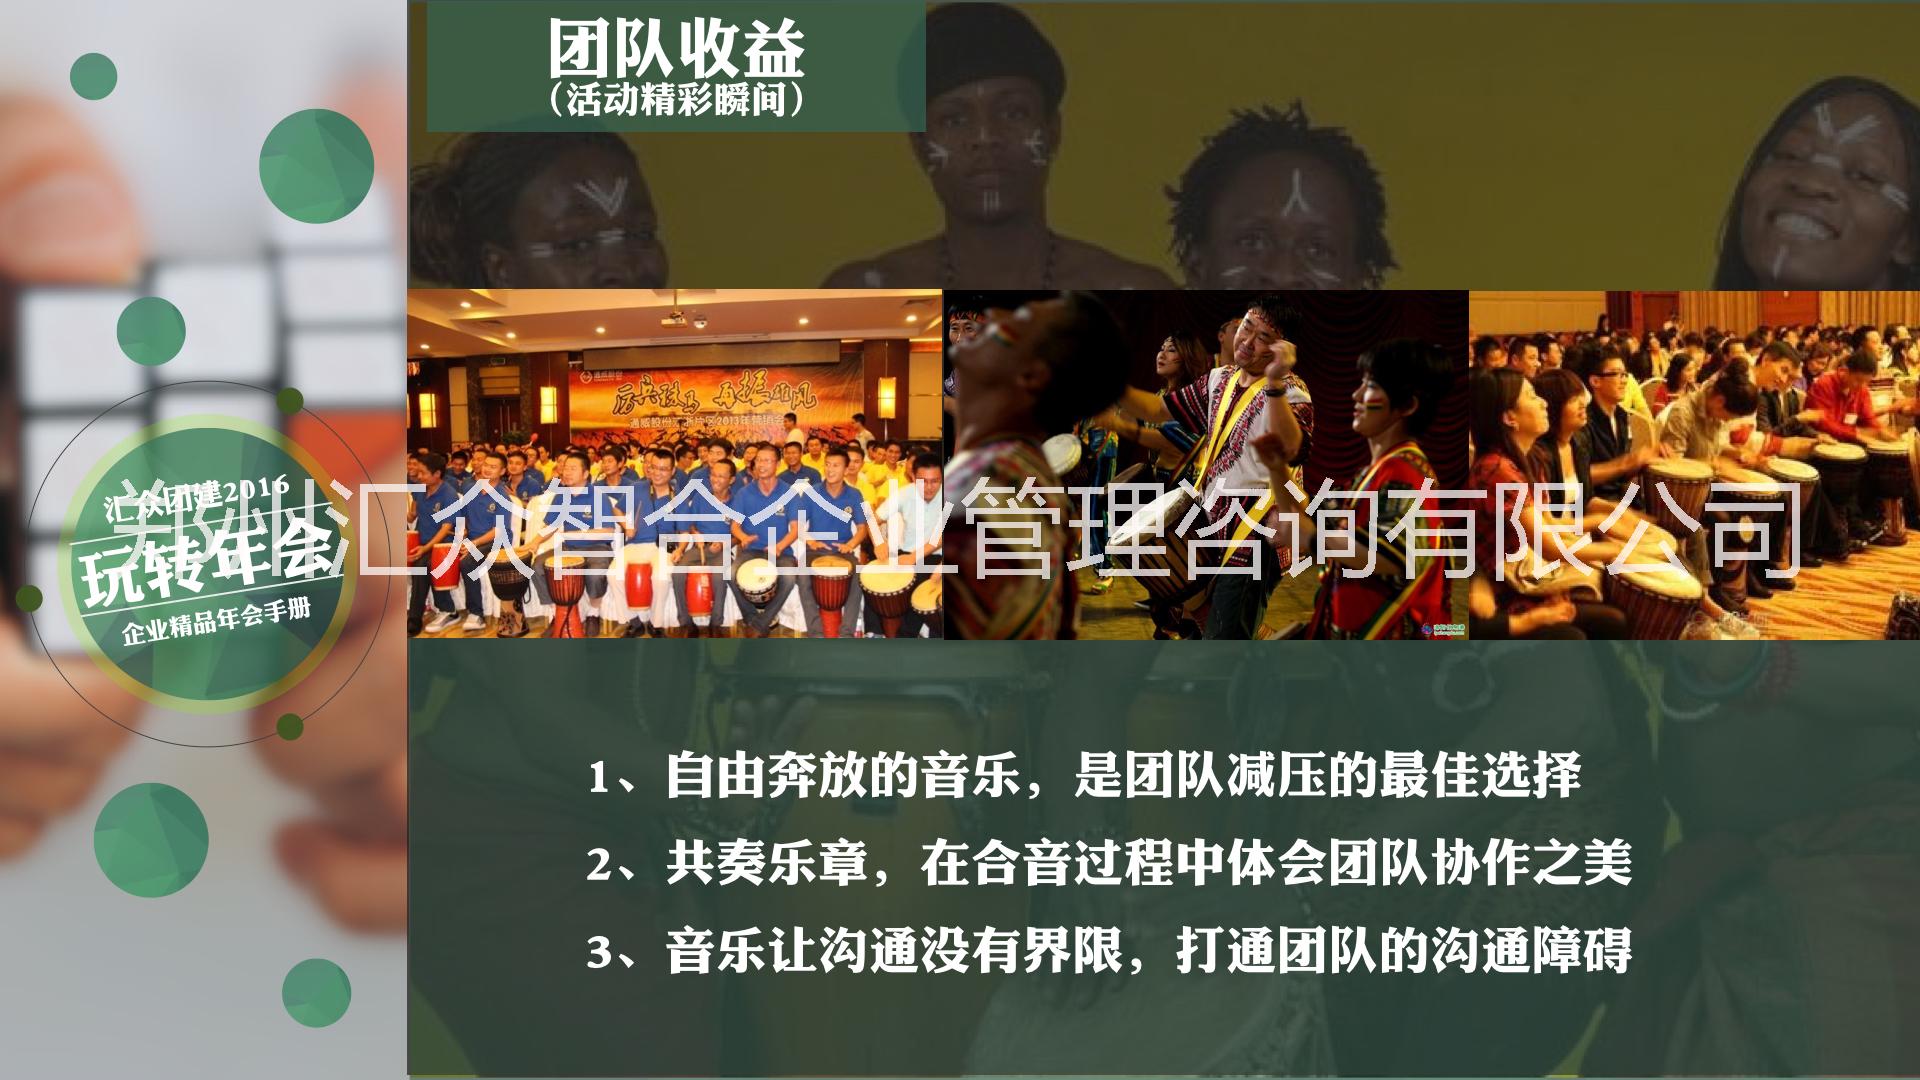 郑州市汇众团建《非洲鼓狂欢夜》主题年会厂家